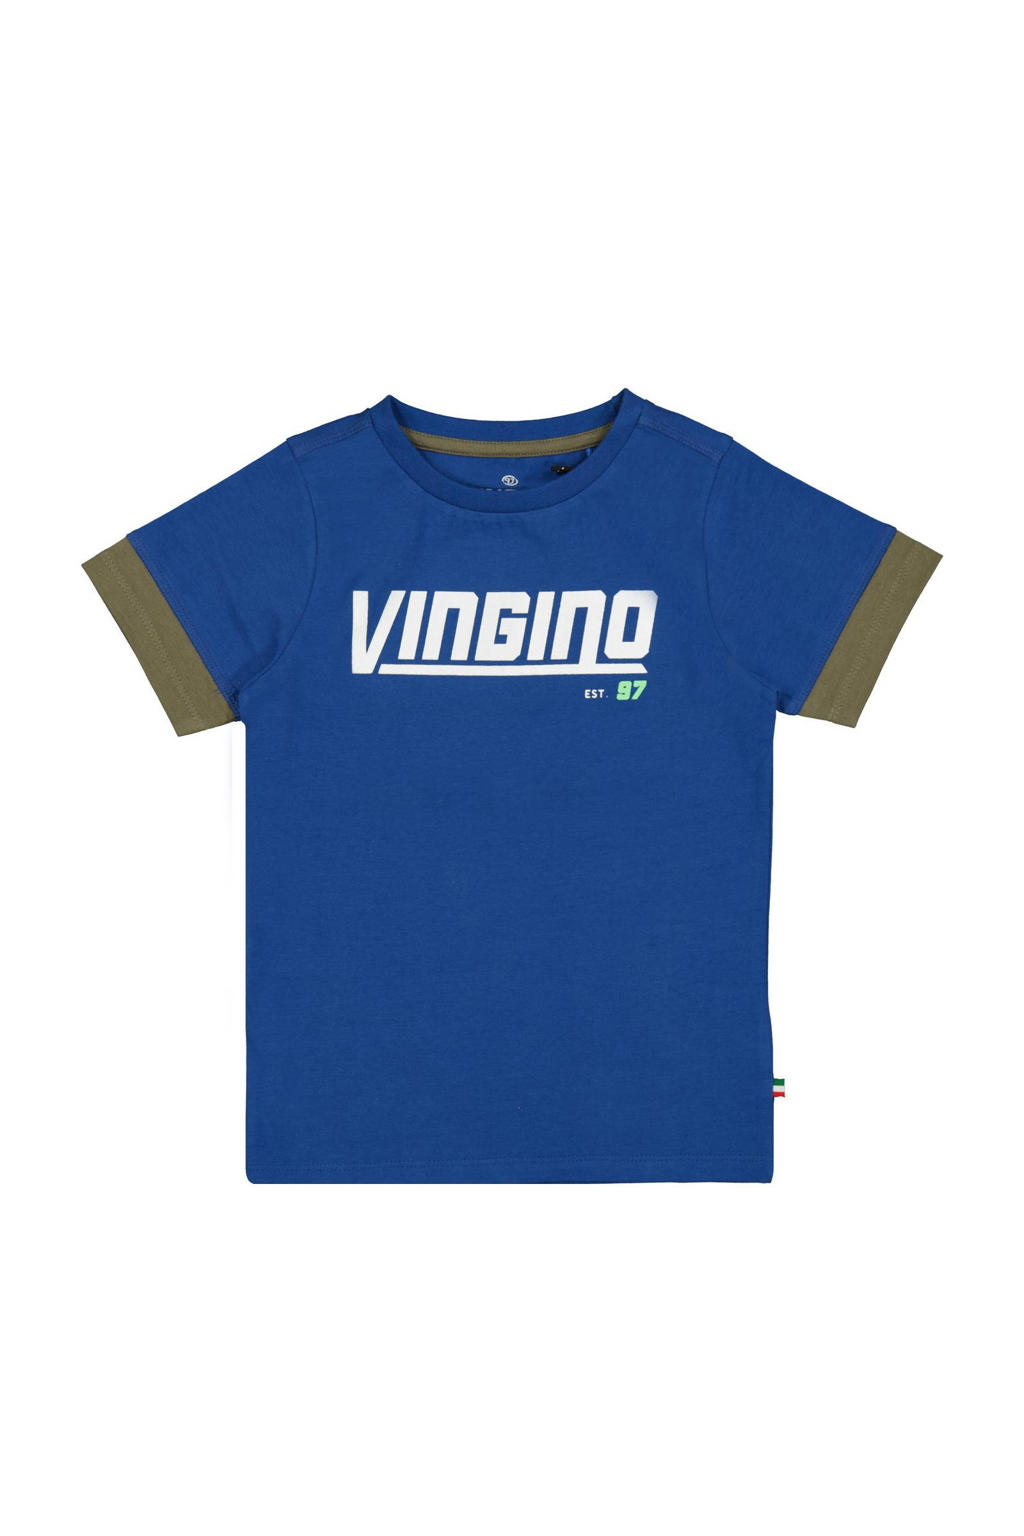 Blauw en groene jongens Vingino T-shirt Hayke hardblauw van stretchkatoen met logo dessin, korte mouwen en ronde hals